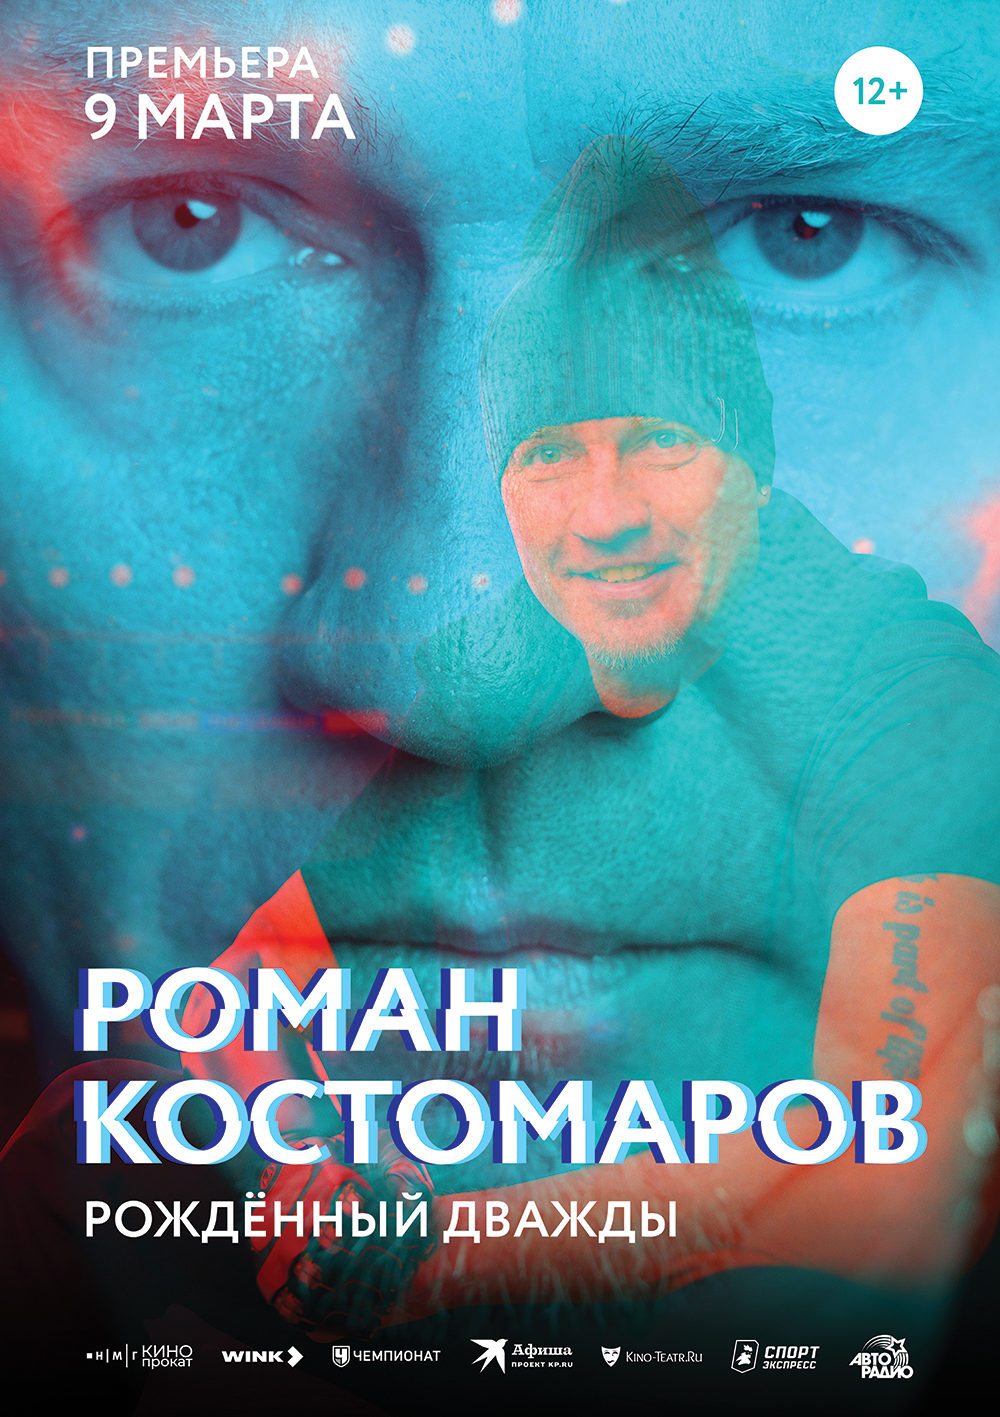 Опубликован трейлер неигрового фильма «Роман Костомаров: рожденный дважды»